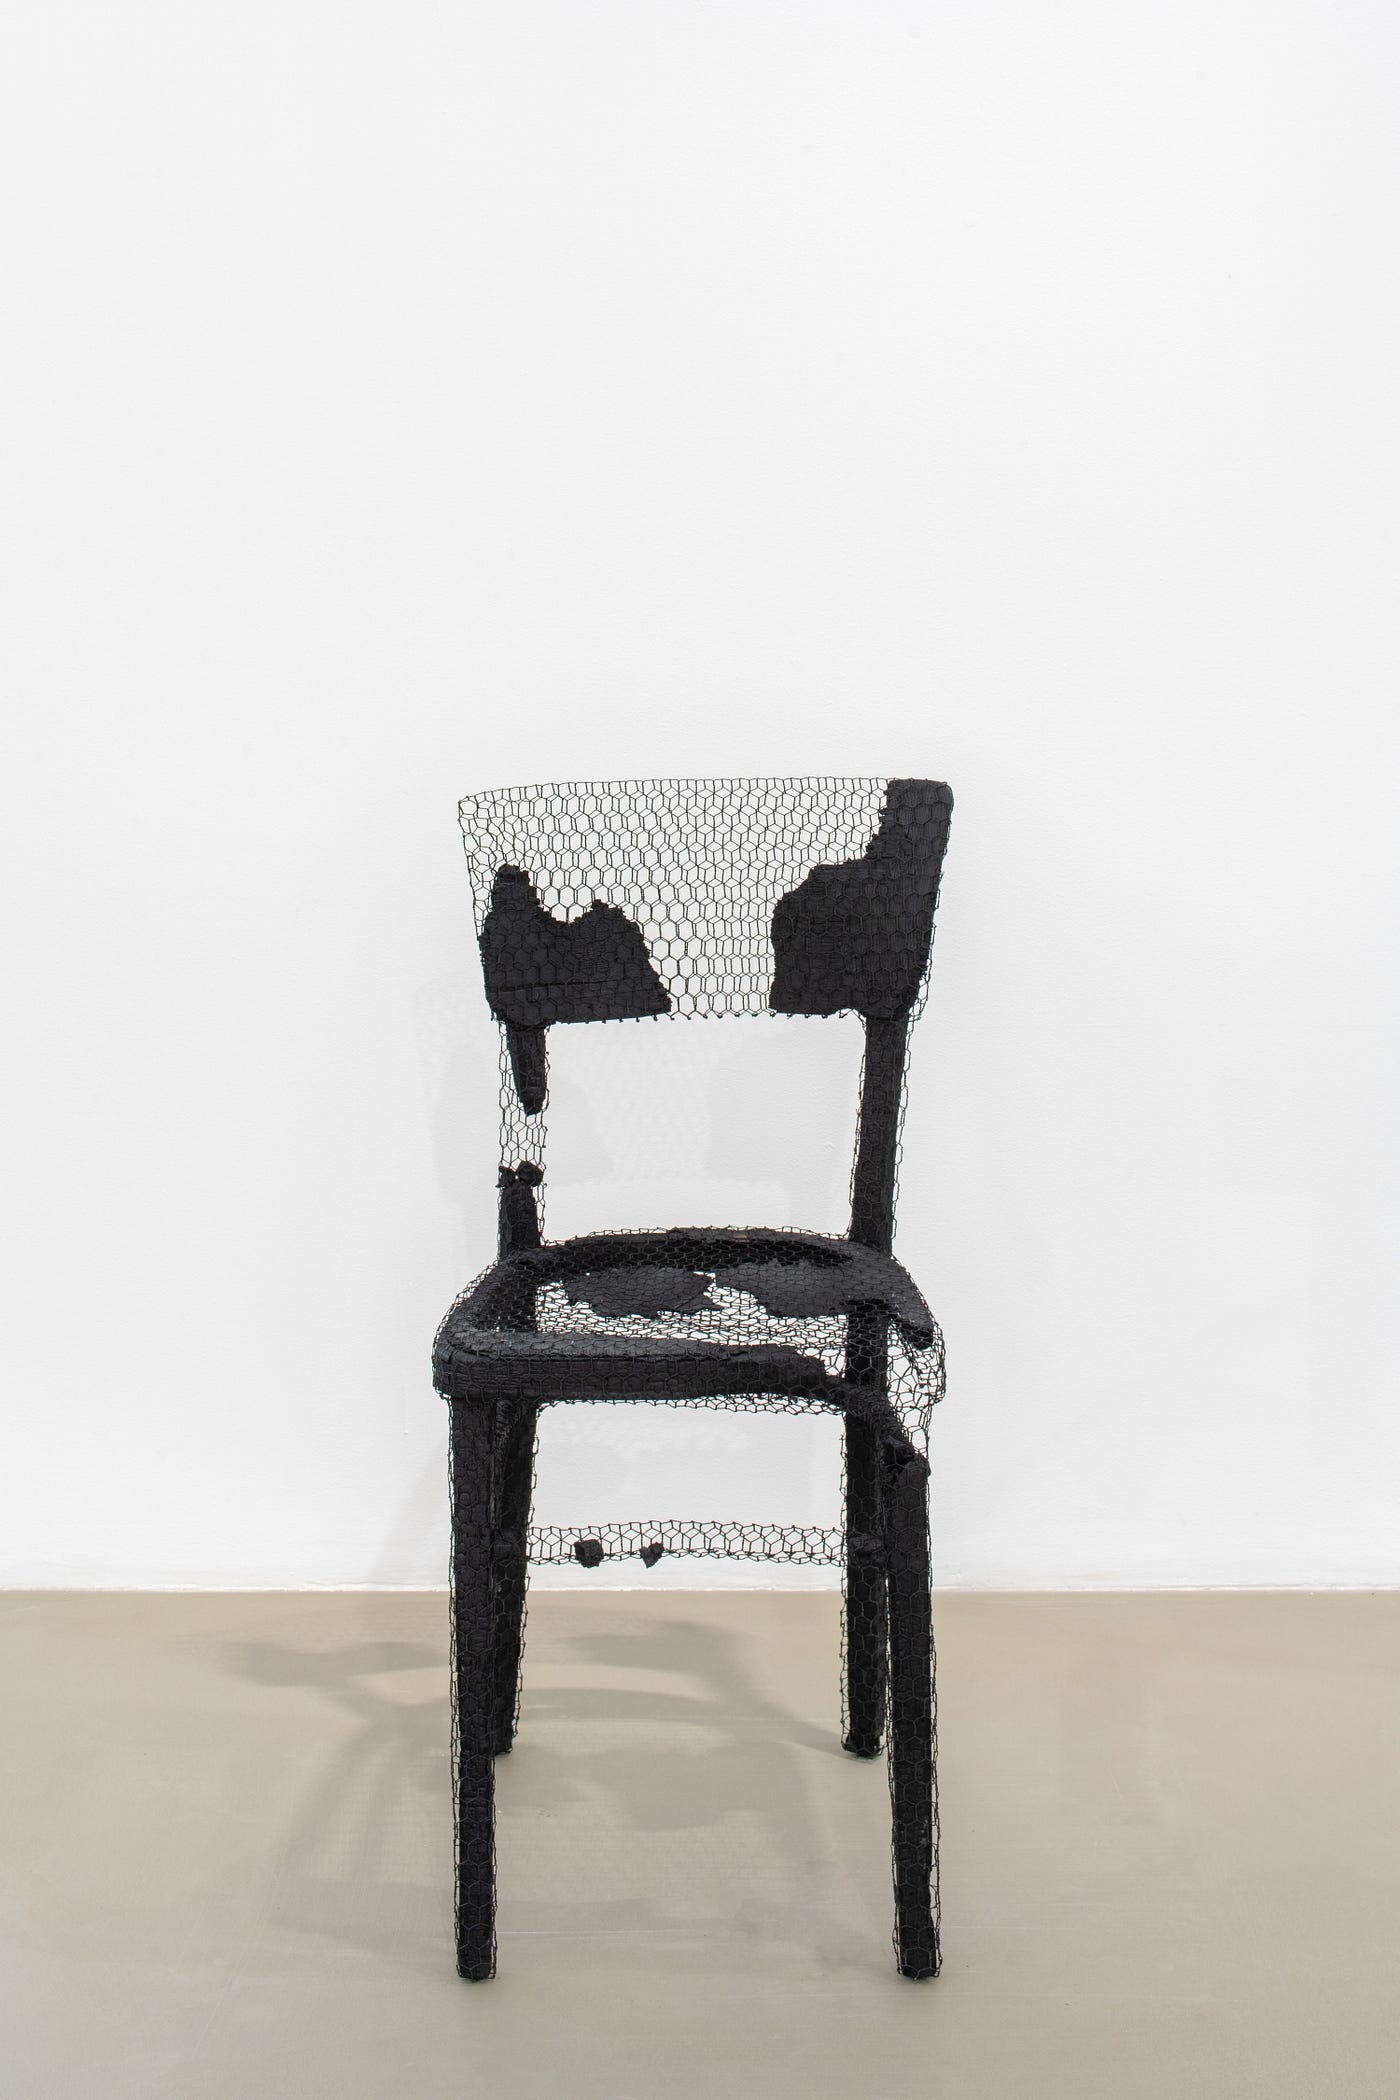 À la galerie Chantal Crousel, ceci n'est pas une chaise | by Julie Amo |  Medium